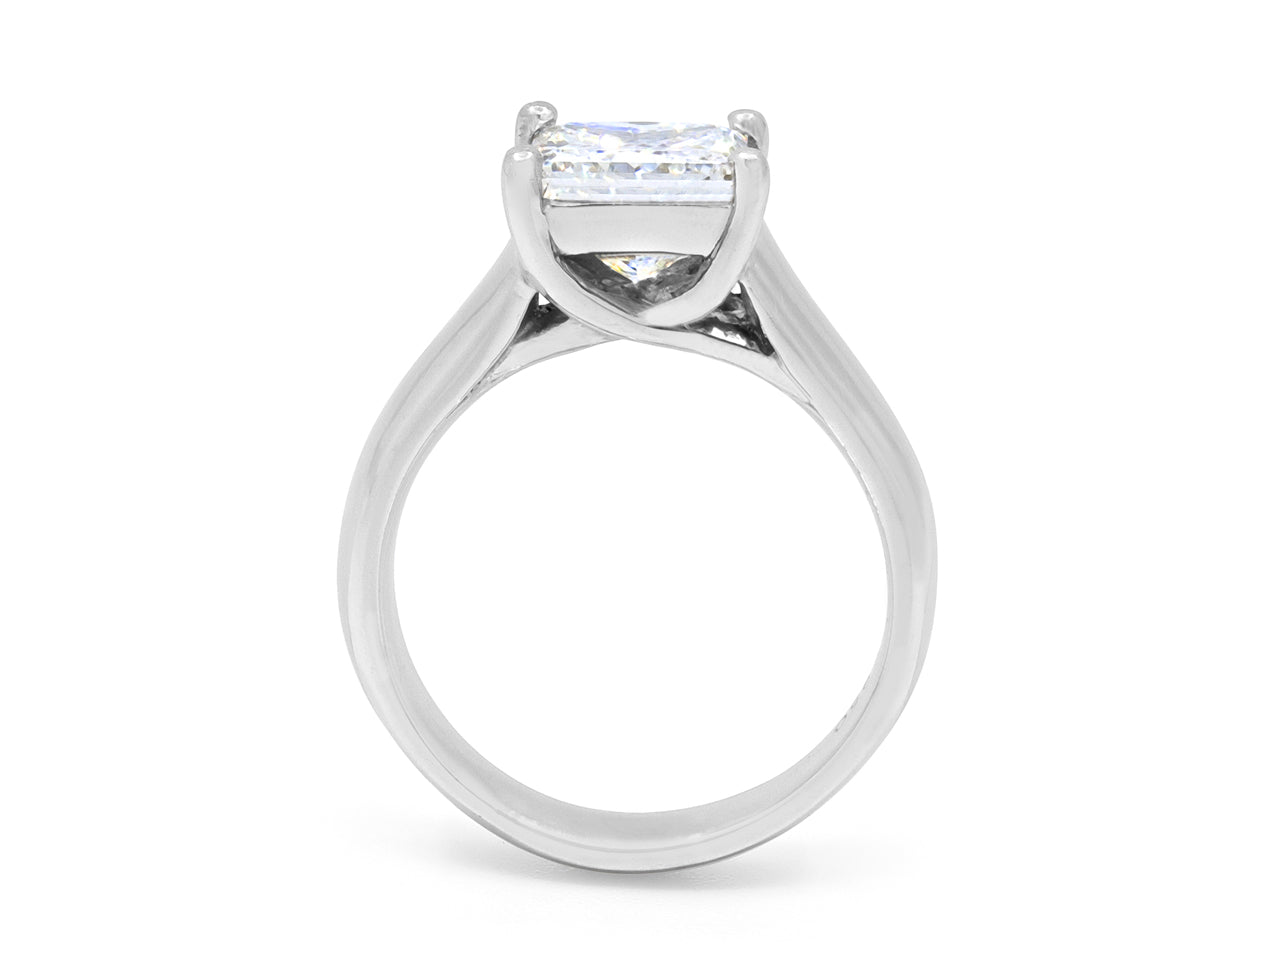 Princess-Cut Diamond, 2.08 Carat G/VS2, Solitaire Ring in Platinum